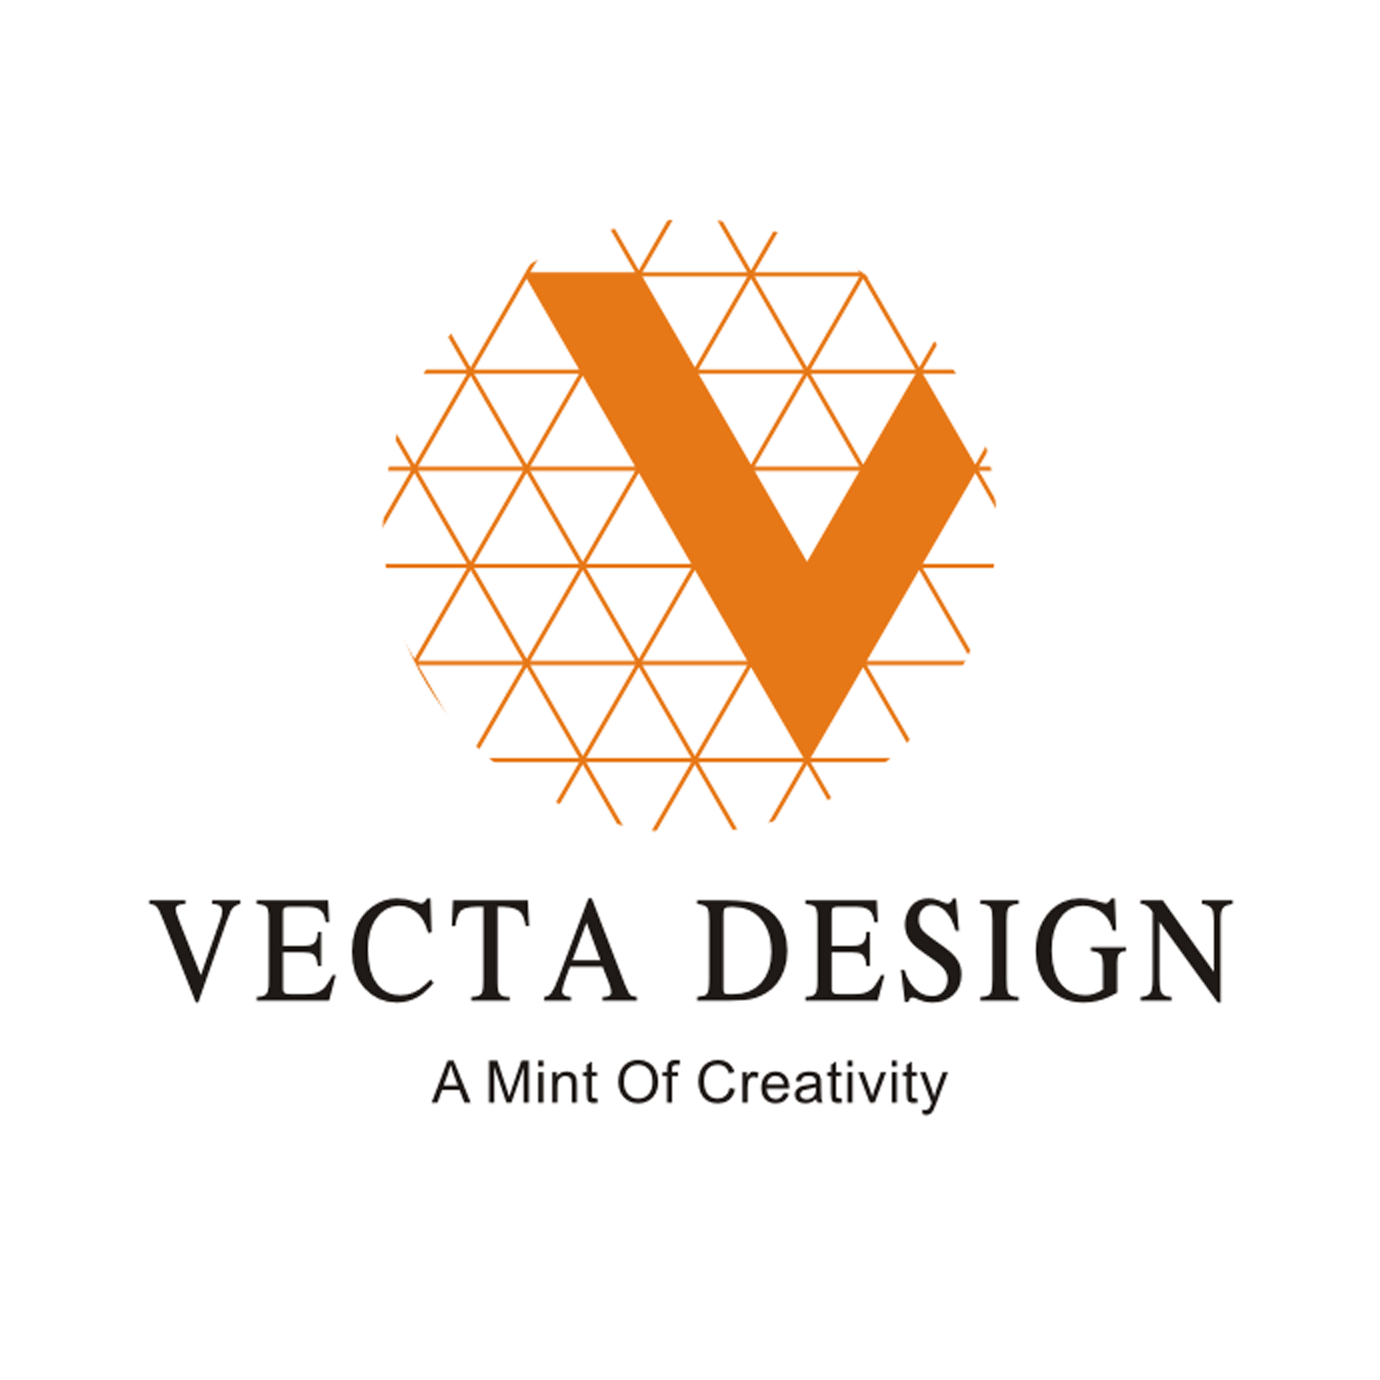 Vecta Design